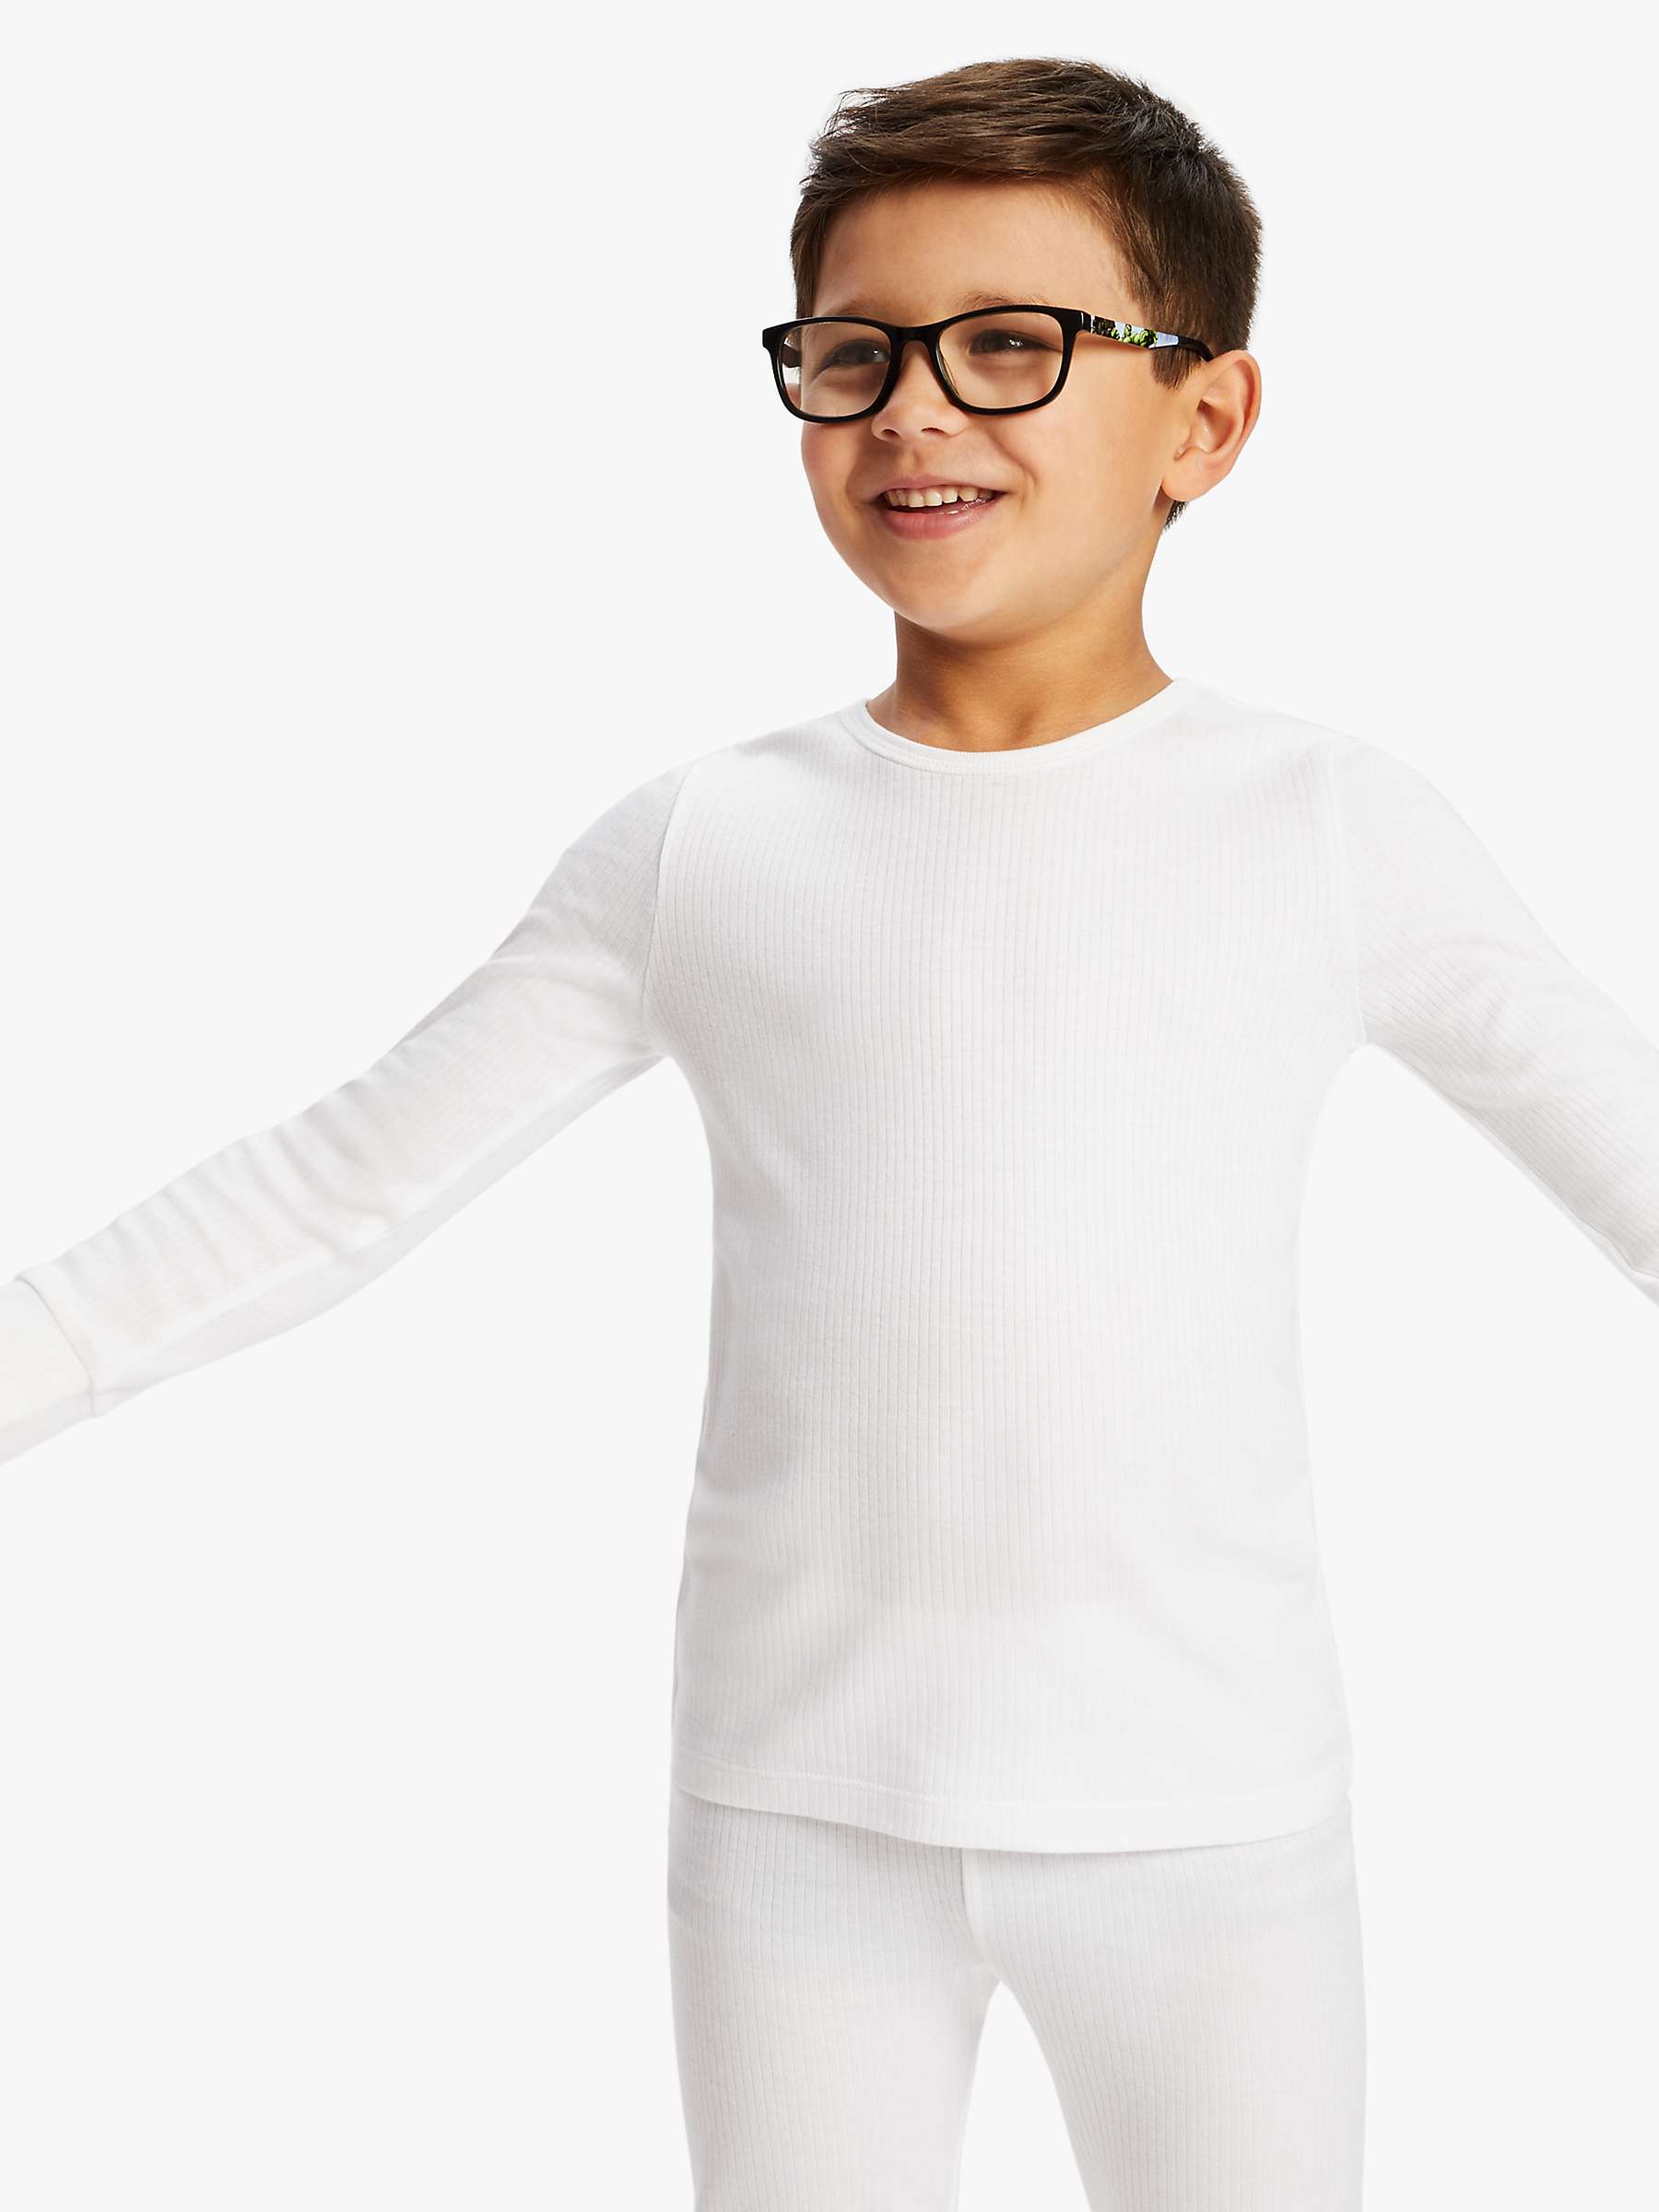 Buy John Lewis Kids' Thermal Long Sleeve Top, Pack of 2 Online at johnlewis.com